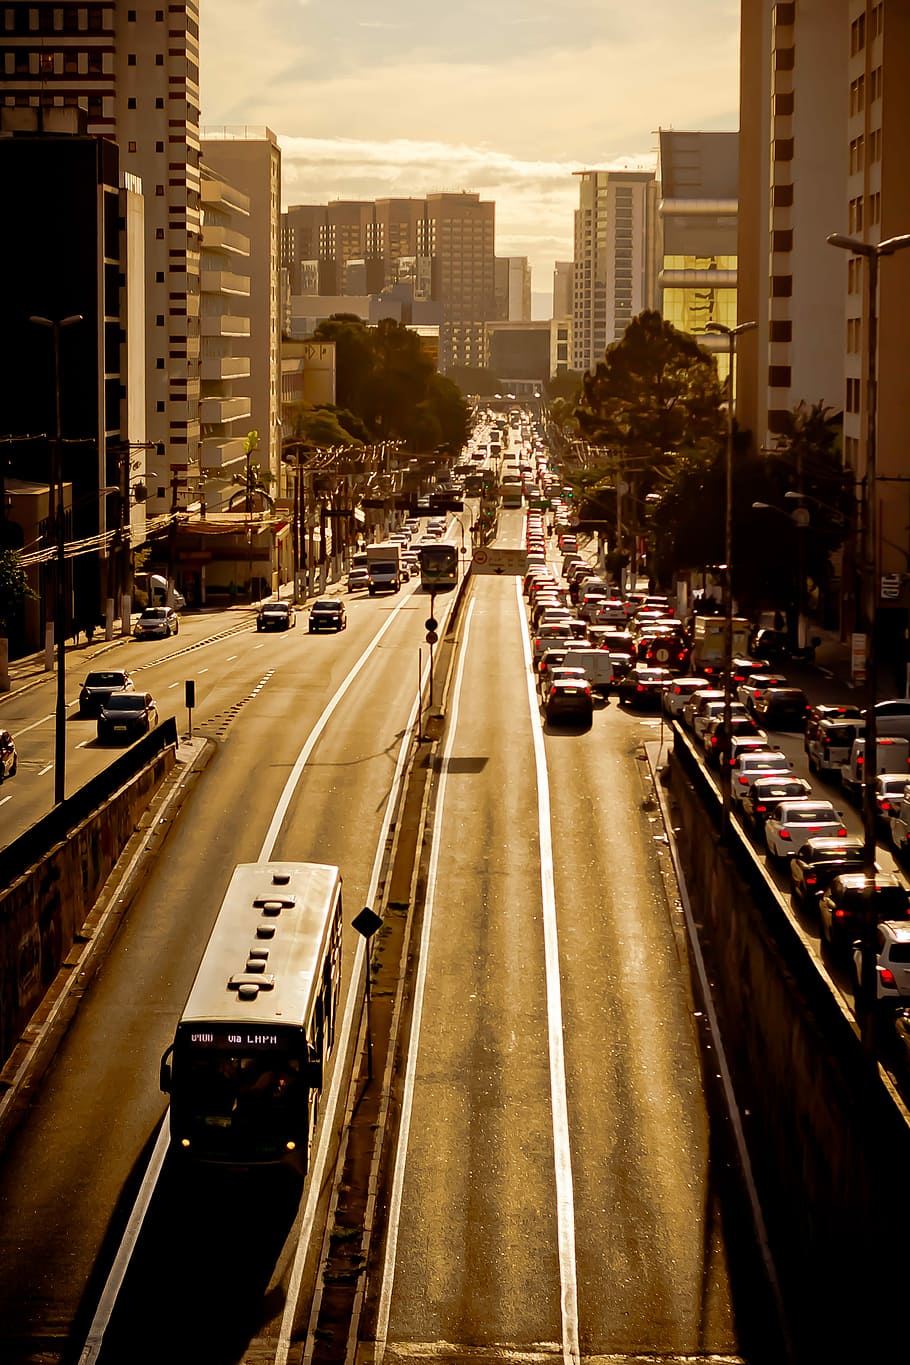 Lalu lintas, Jalan, Refleksi, kaca spion, spion, cermin, sewa mobil, naik, kota, kehidupan kota